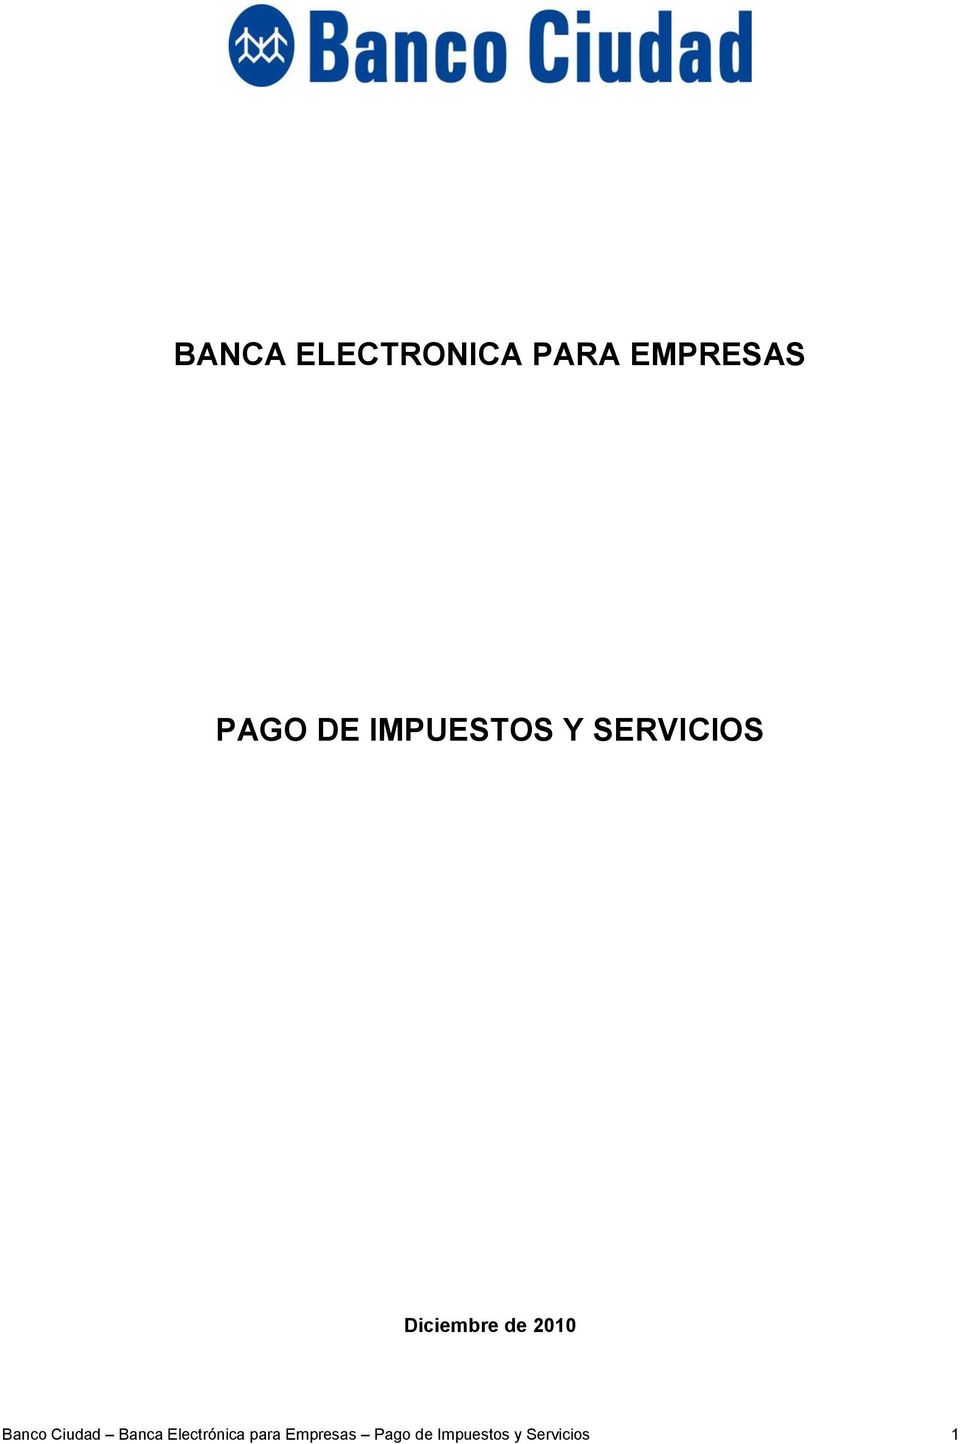 2010 Banco Ciudad Banca Electrónica